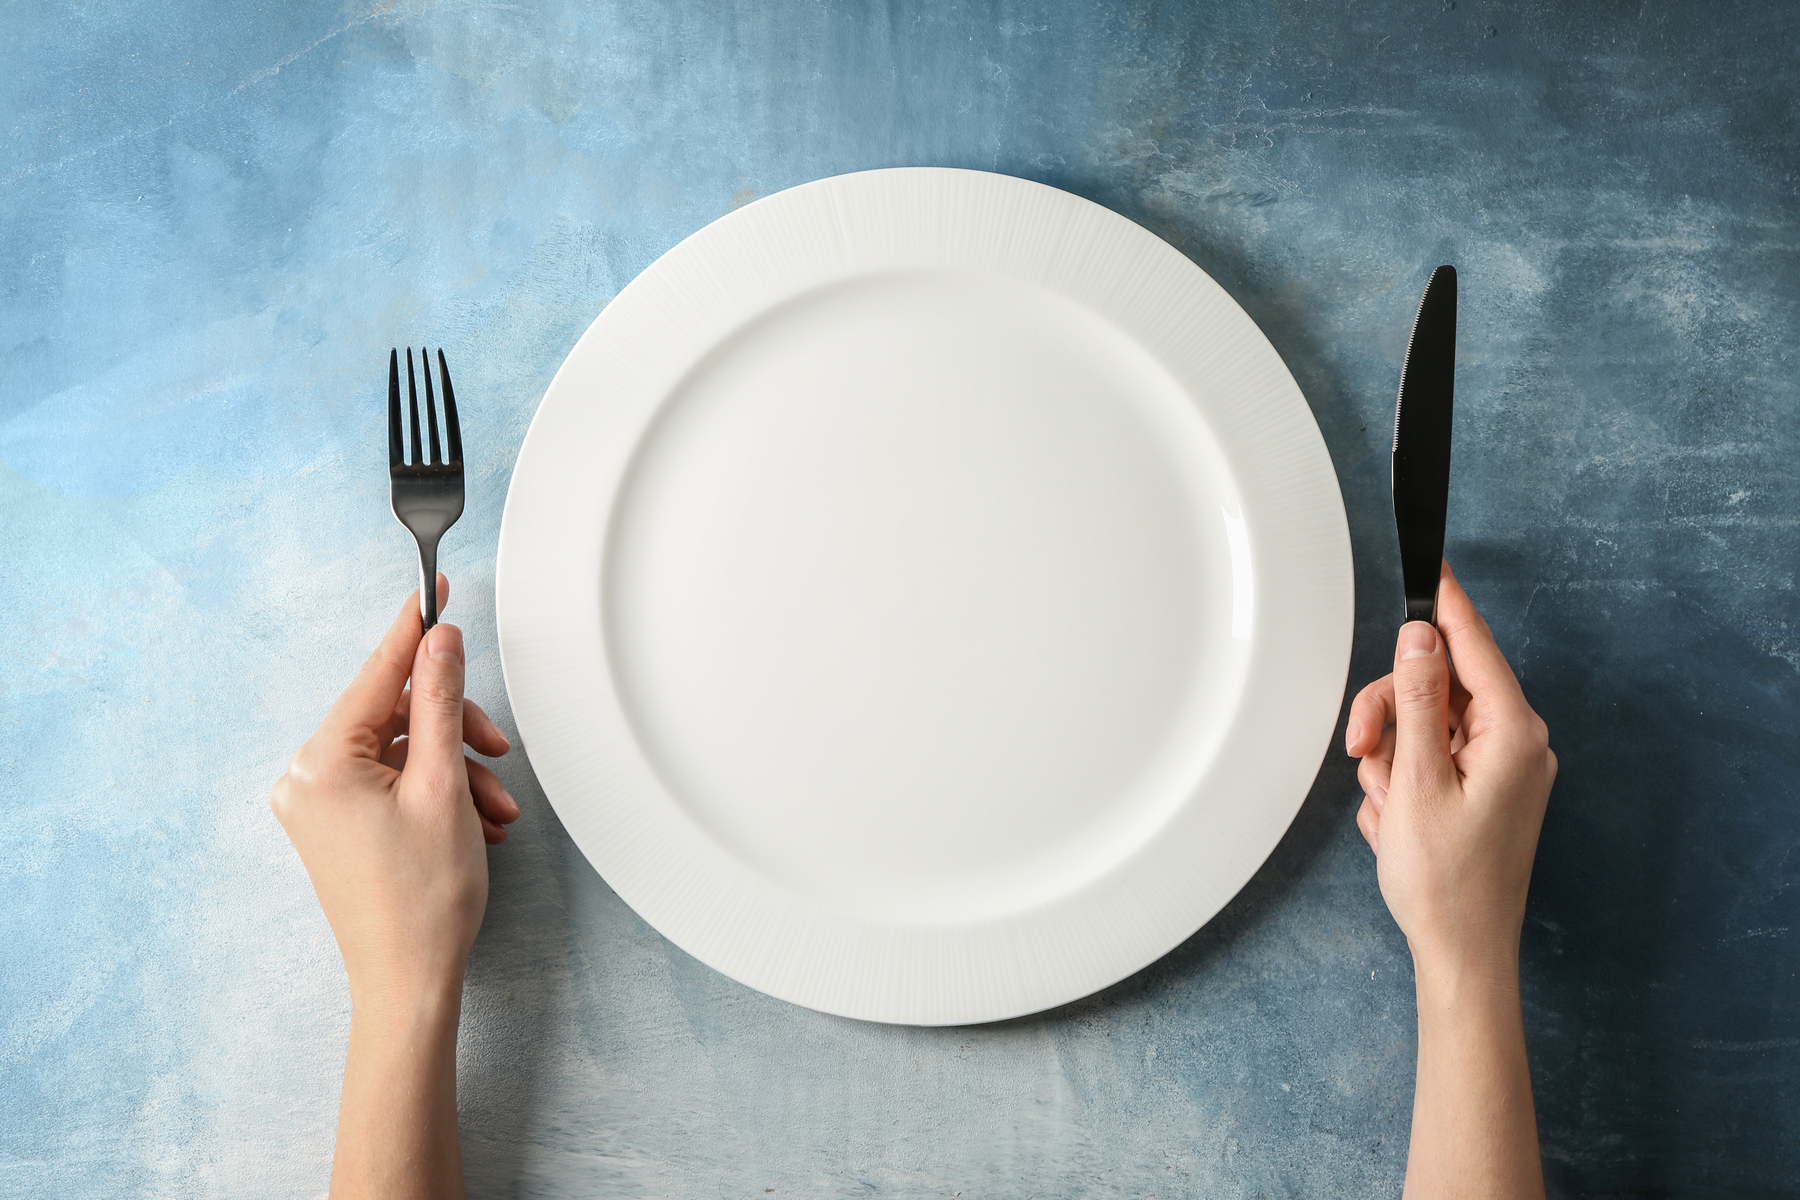 Лишняя тарелка на столе. Тарелка на столе. Тарелка вилка нож. Пустая тарелка. Пустая тарелка на столе.